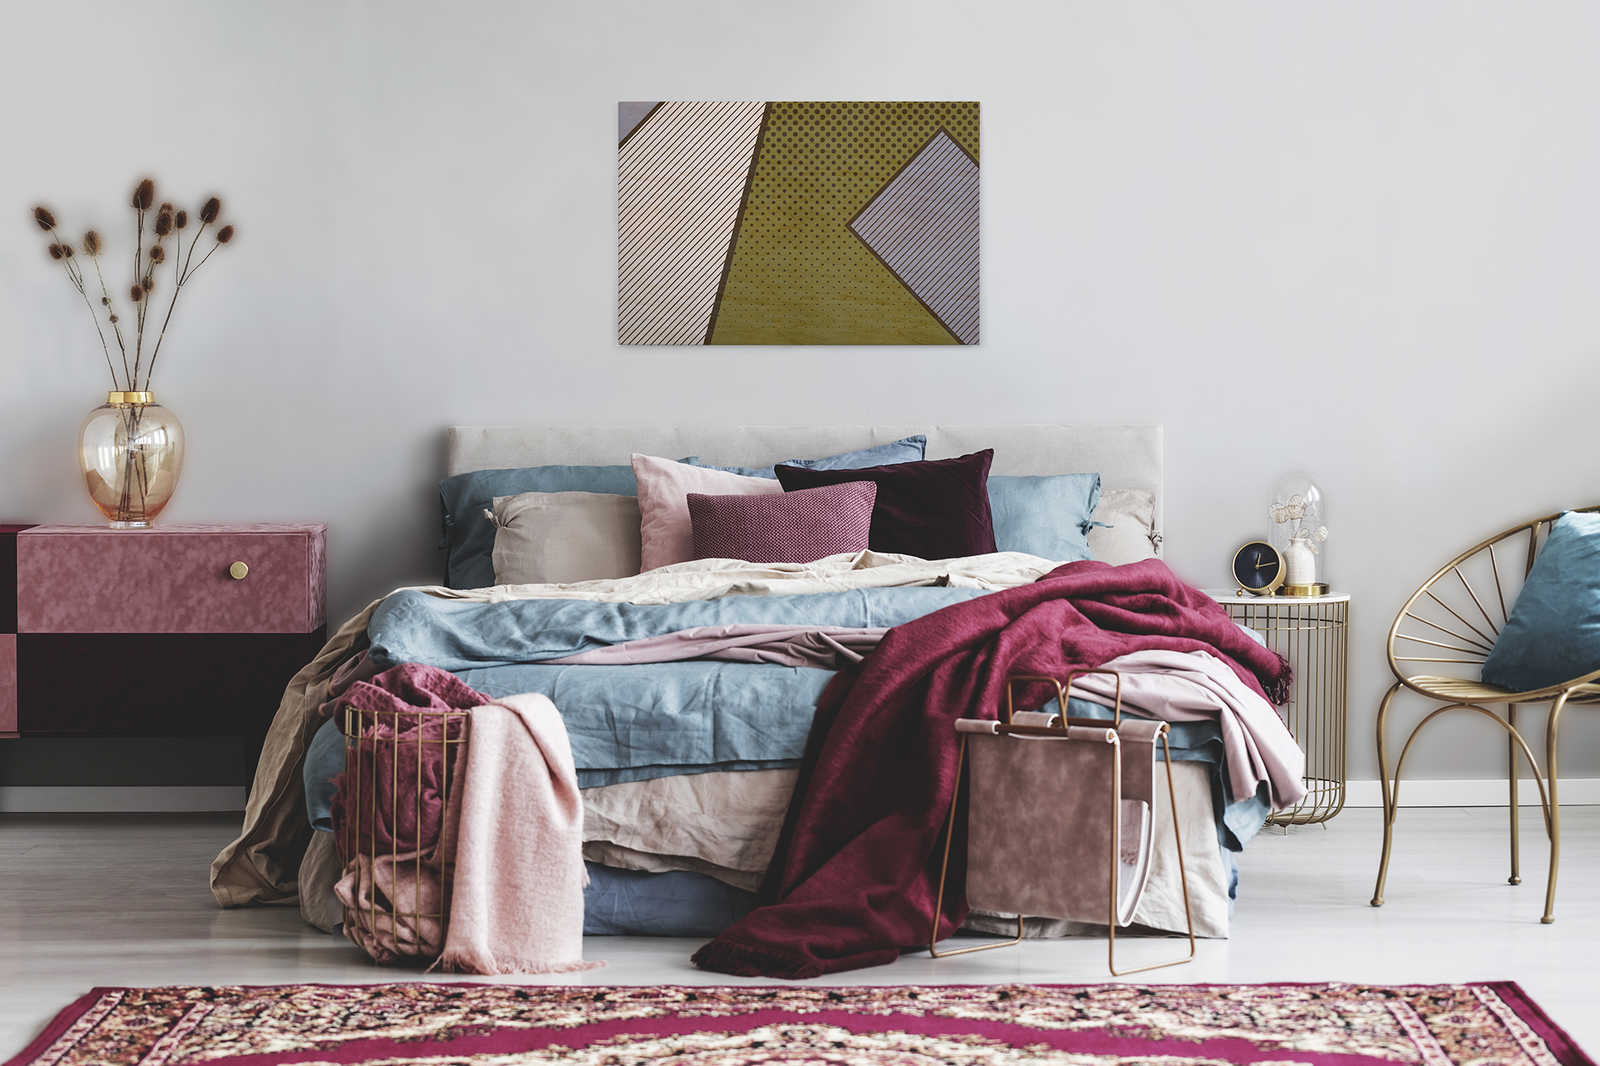             Vogelbende 2 - Canvas schilderij, modern patroon in pop art stijl- multiplex structuur - 0,90 m x 0,60 m
        